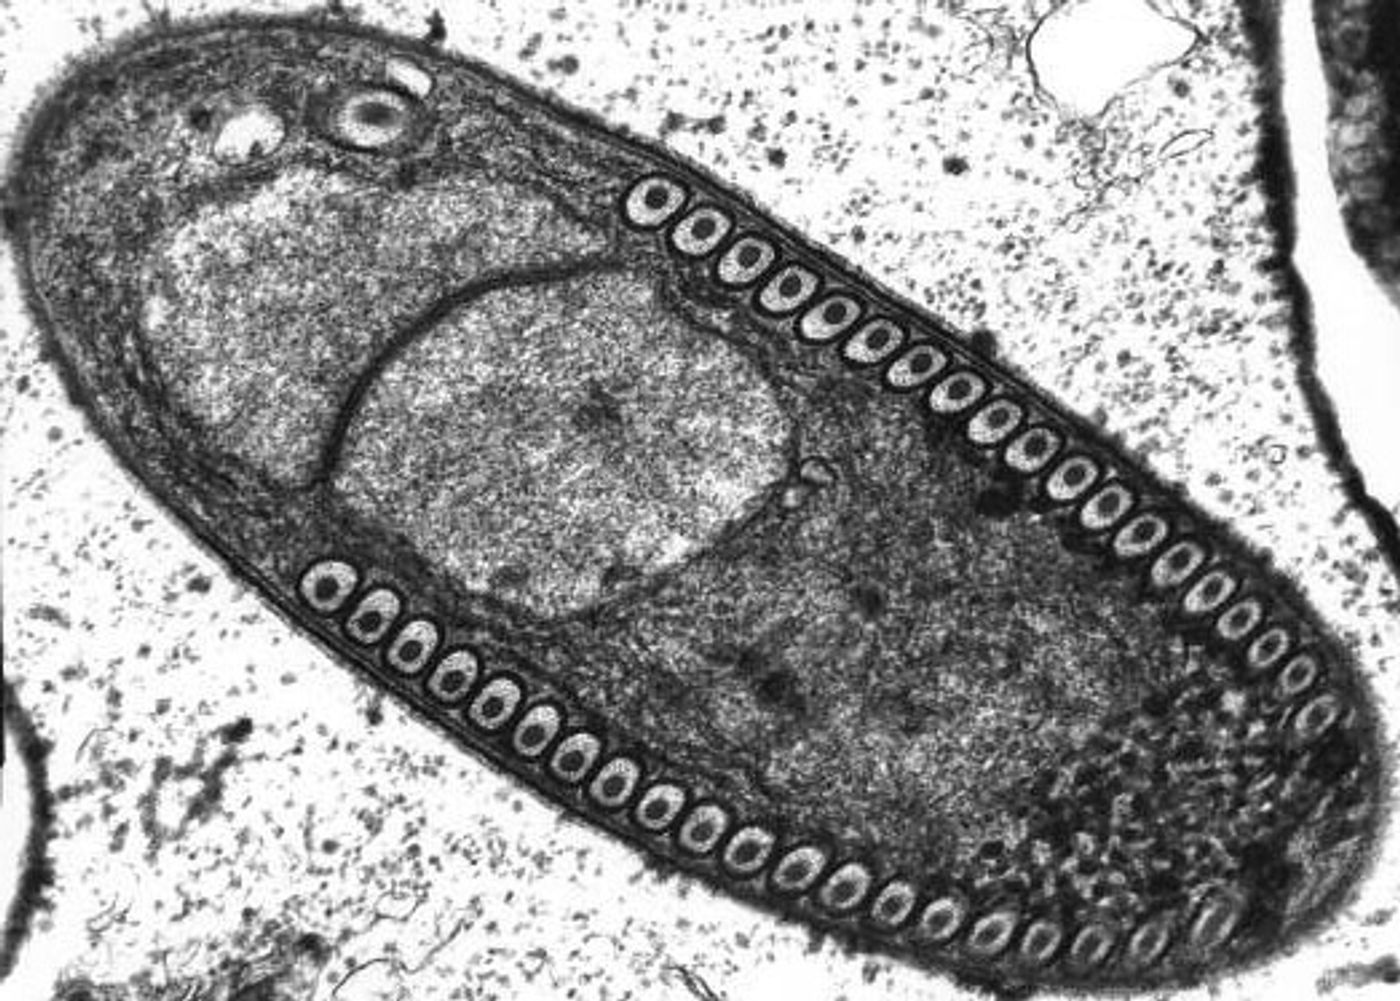 Sporoblast of the Microsporidium Fibrillanosema crangonycis. Electron micrograph taken by Leon White.